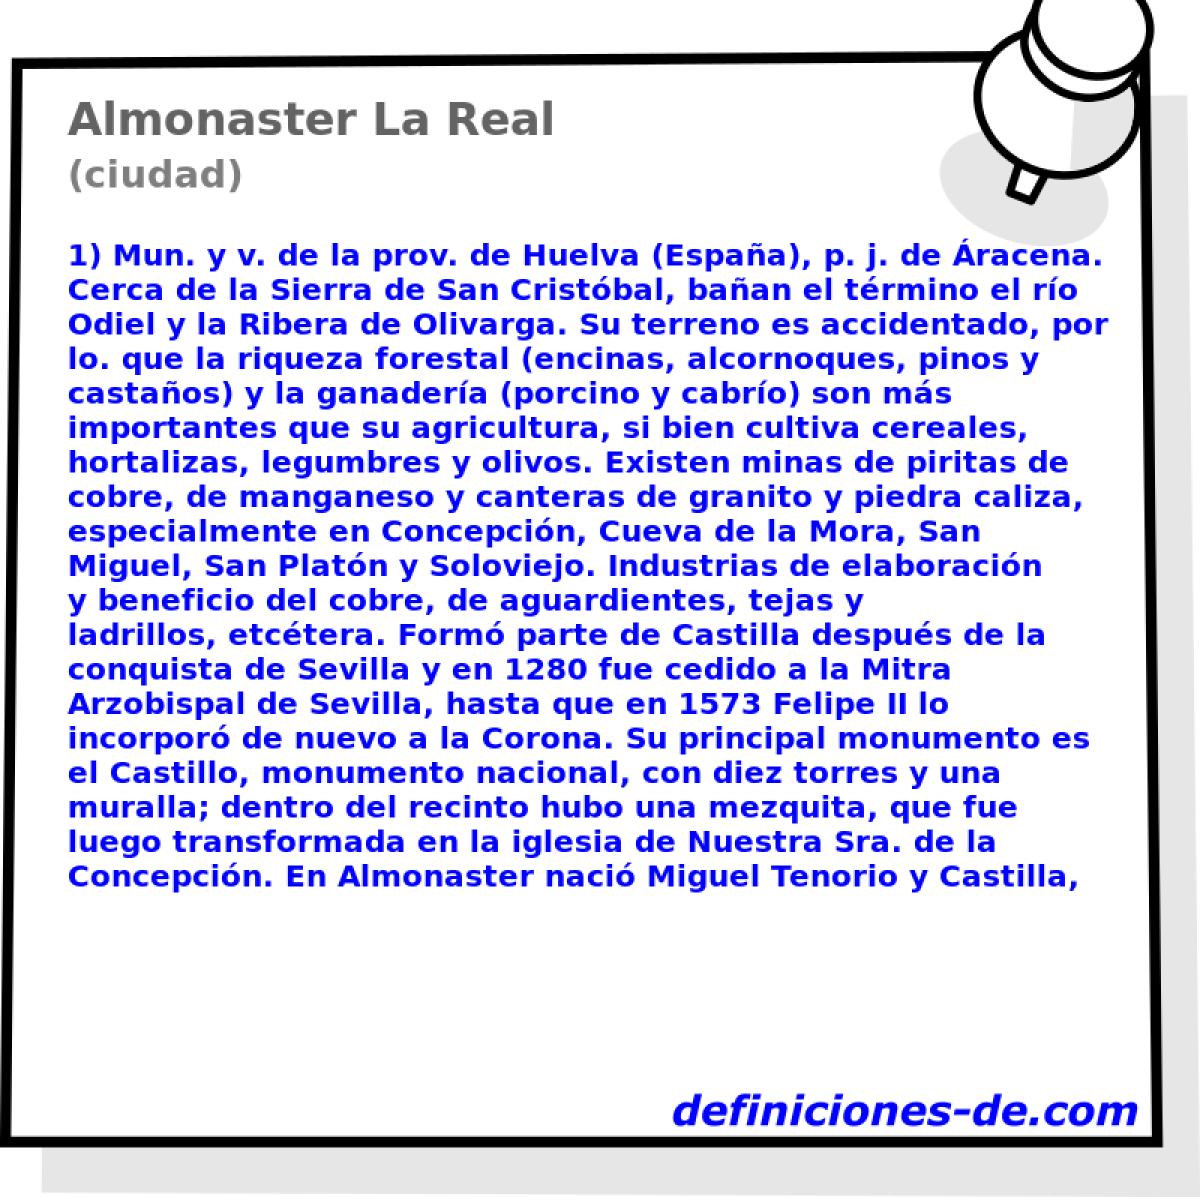 Almonaster La Real (ciudad)